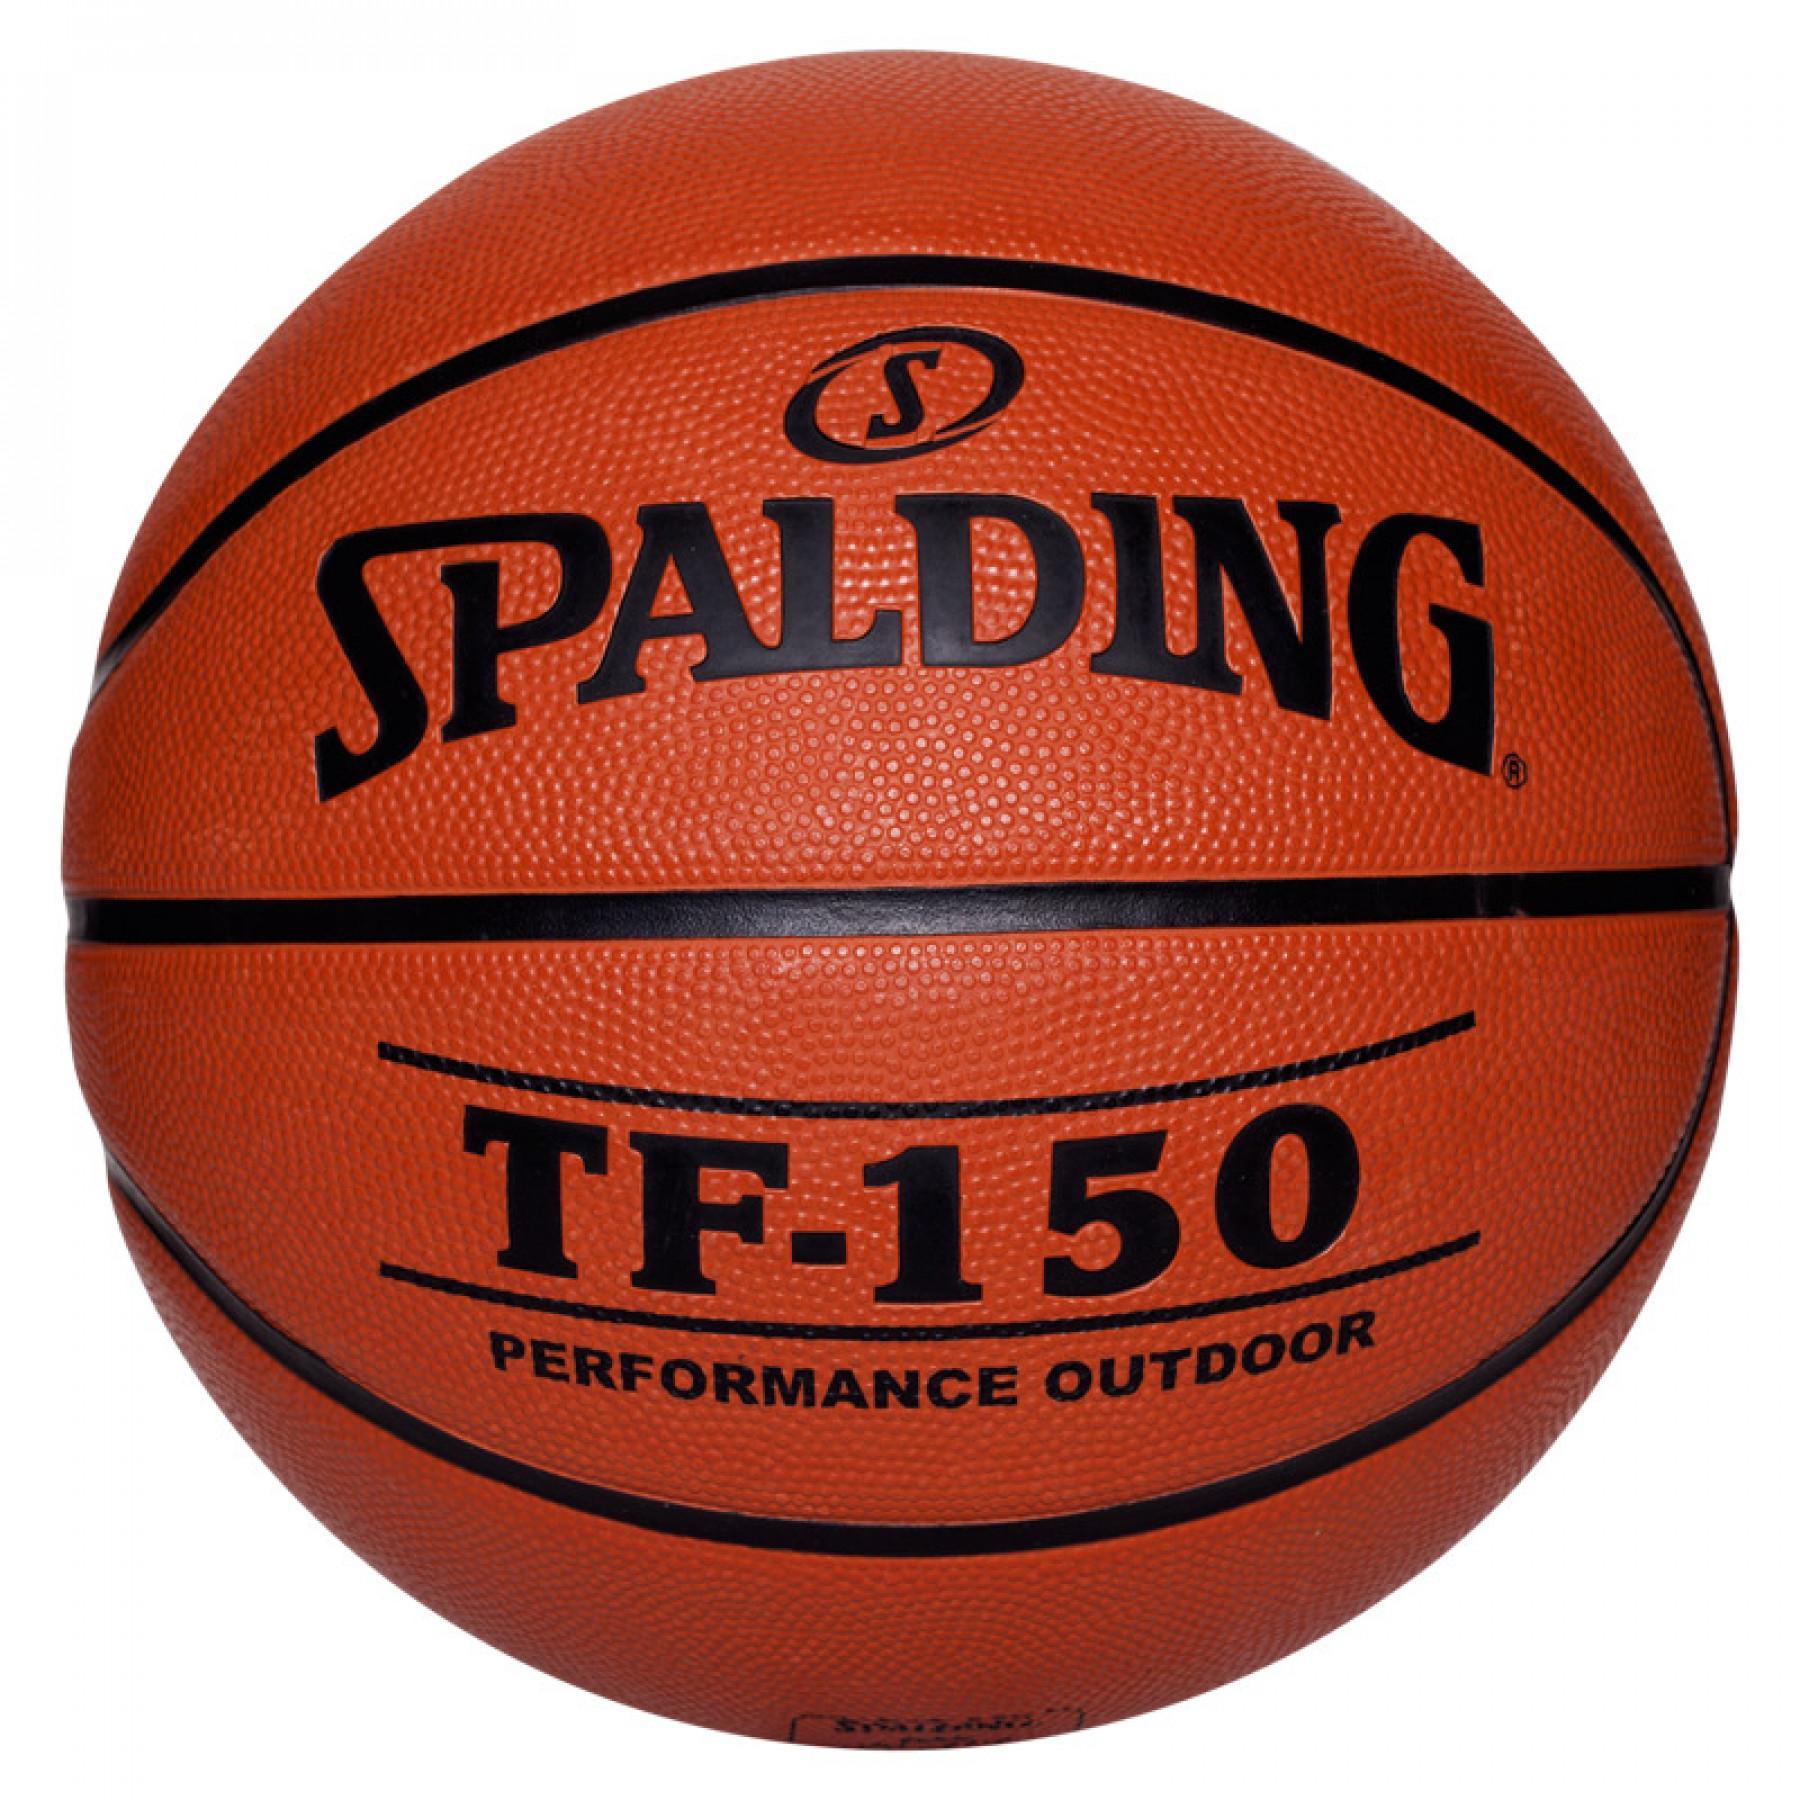 Ballon Spalding Tf150 Outdoor (73-953z)